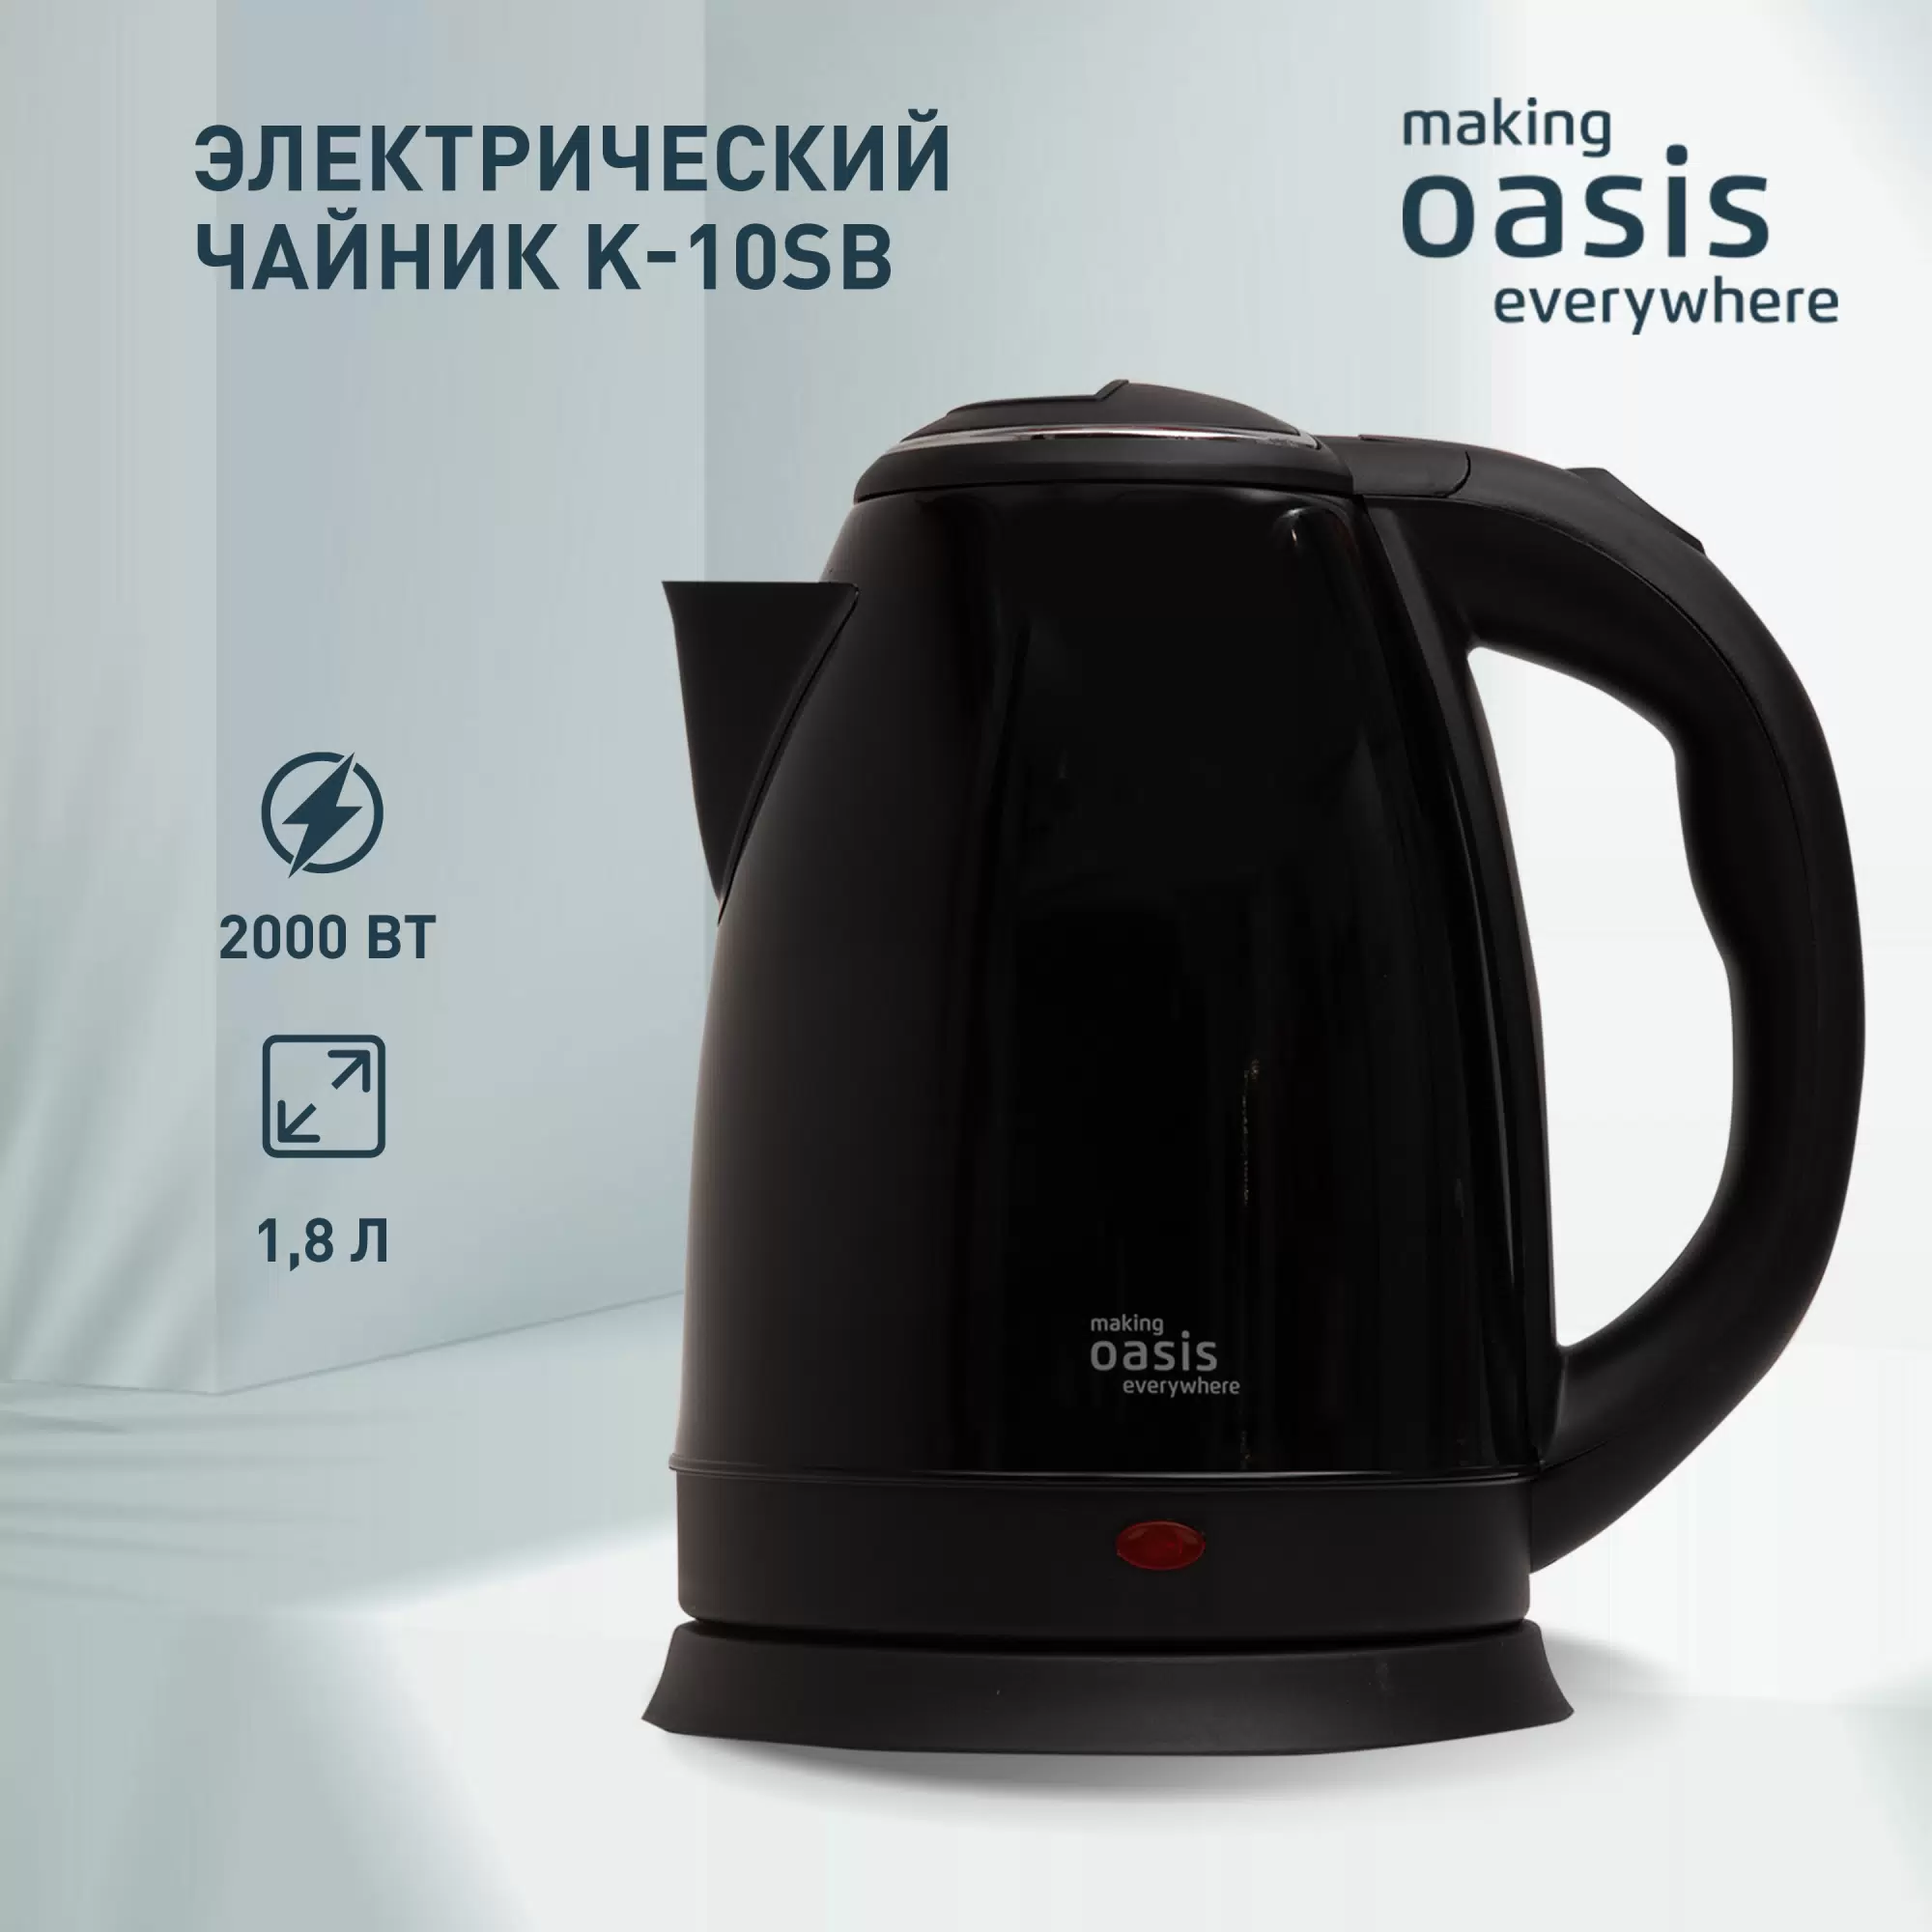 Чайник электрический making oasis everywhere K-10SB 1.8 л черный - VLARNIKA в Луганске